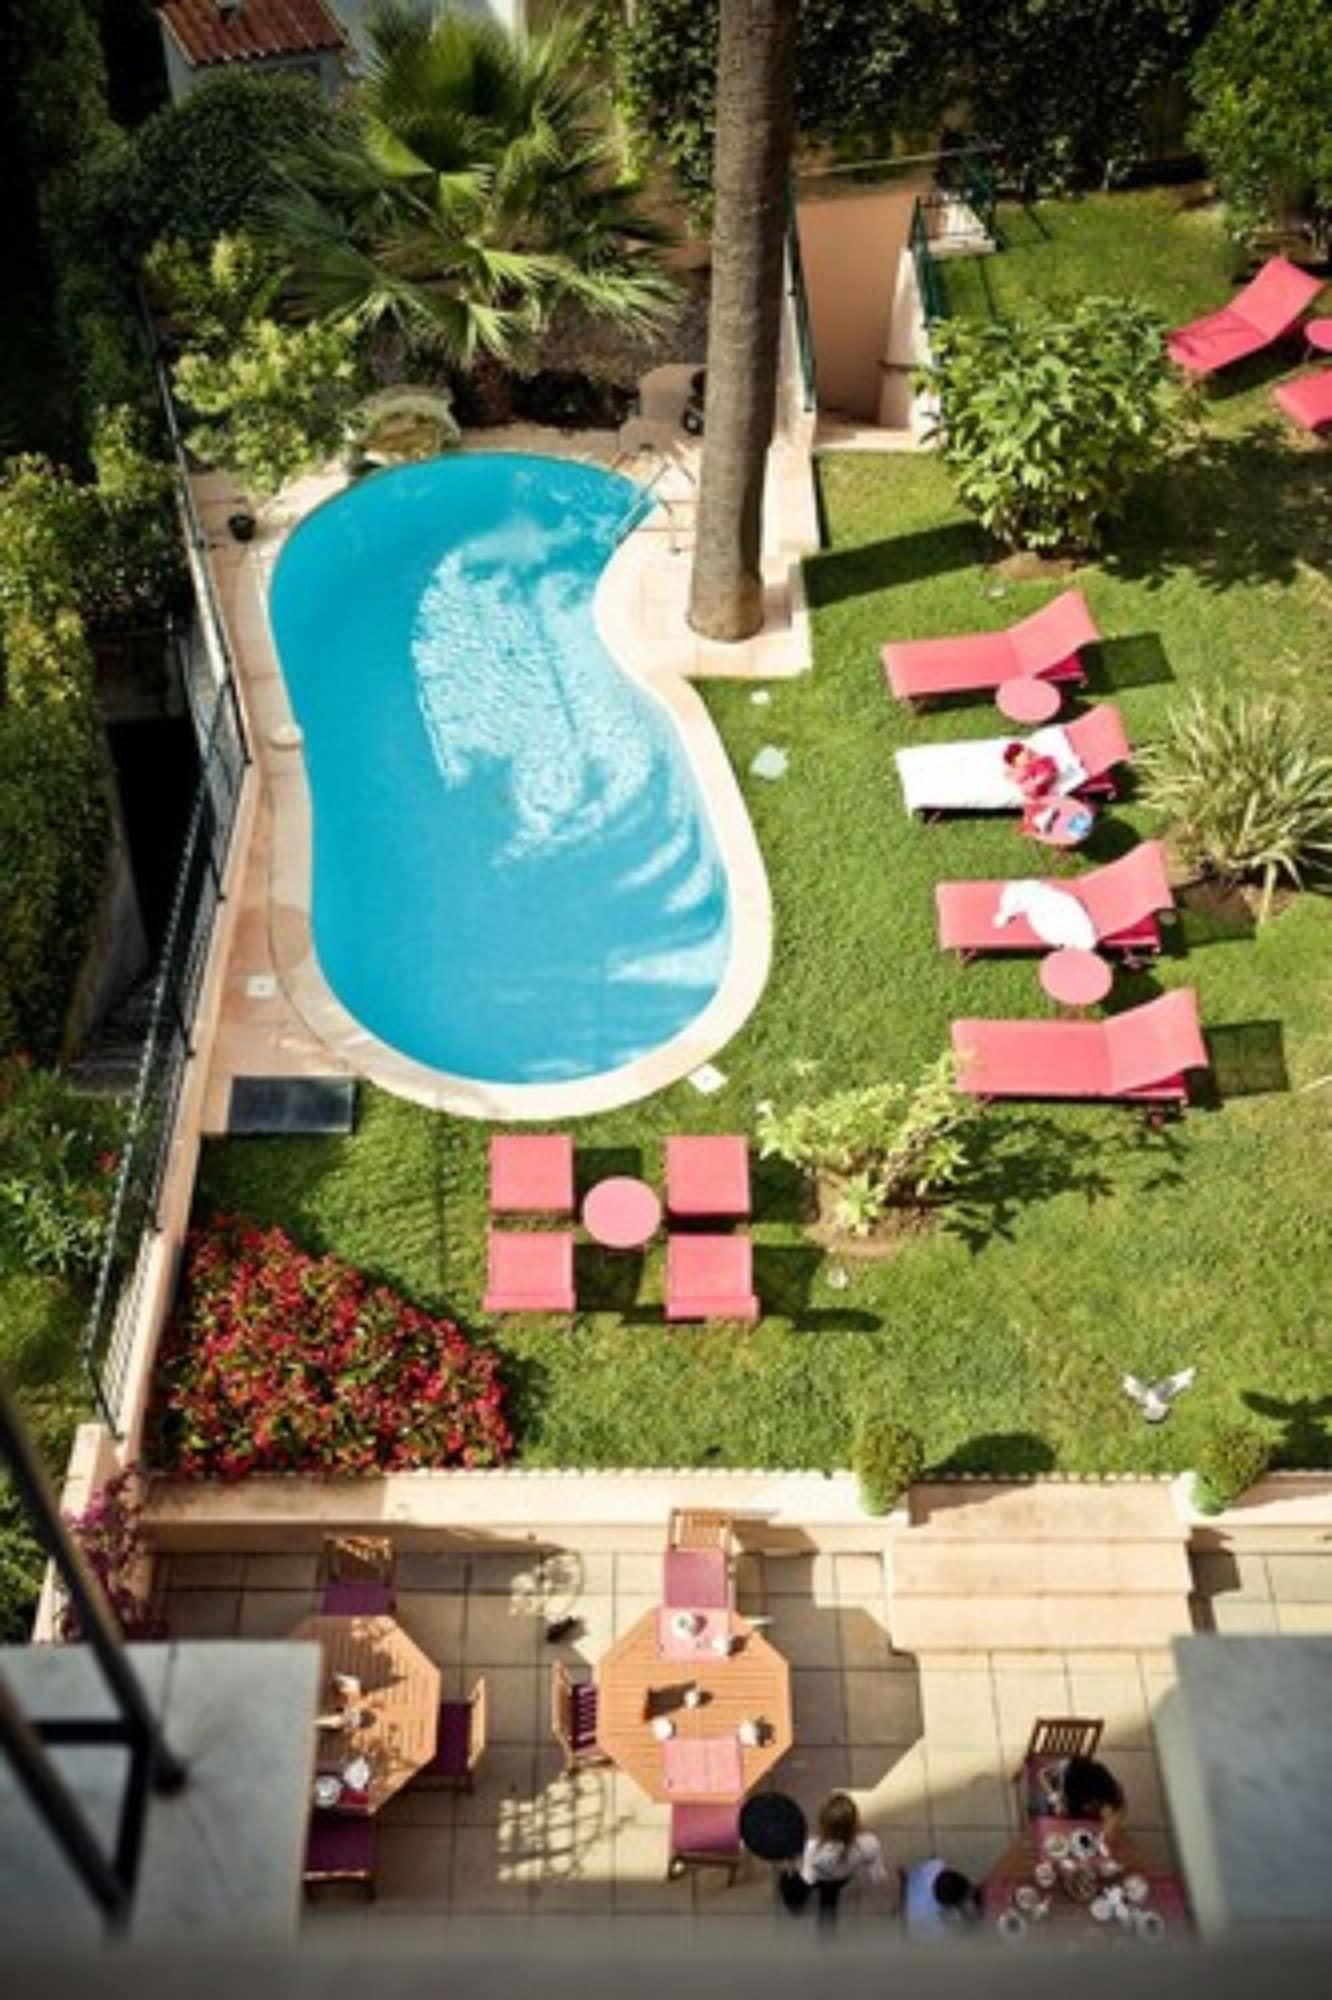 Sun Riviera Hotel Cannes Zewnętrze zdjęcie